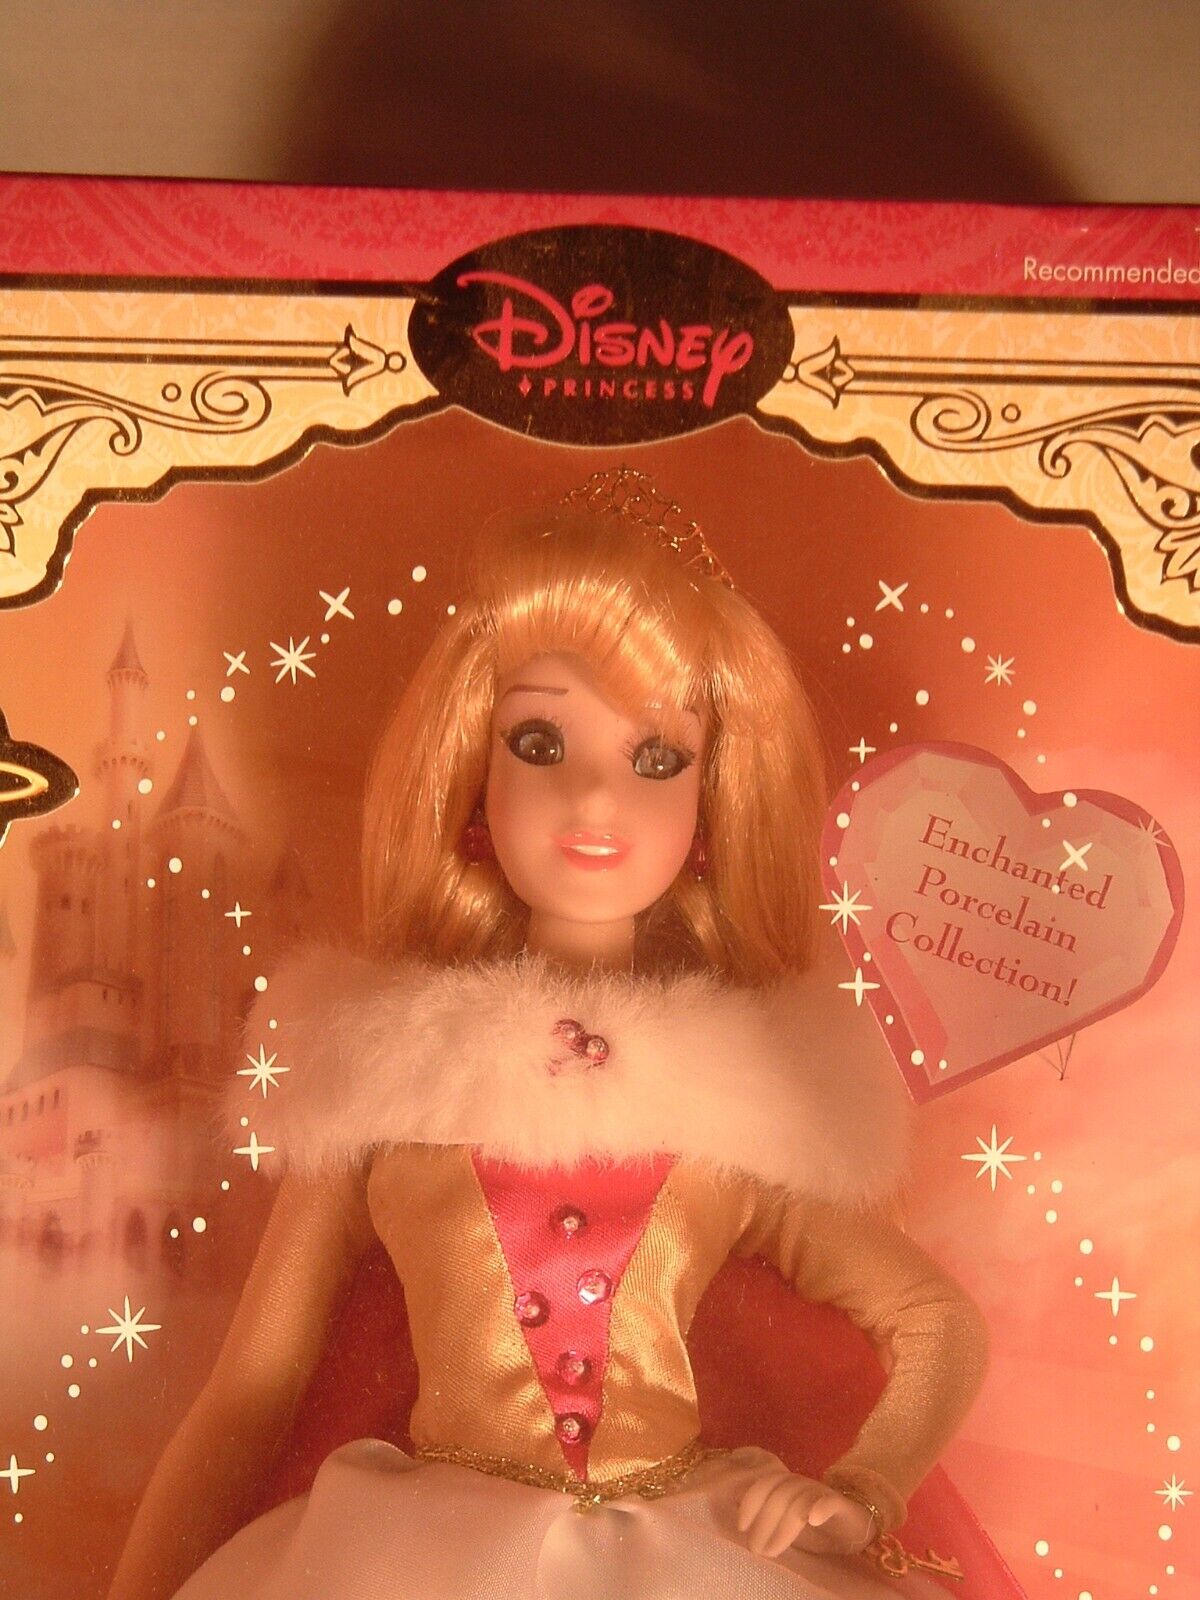 Brass Key Keepsakes Disney Princess Enchanted Tales Aurora Porcelain Doll